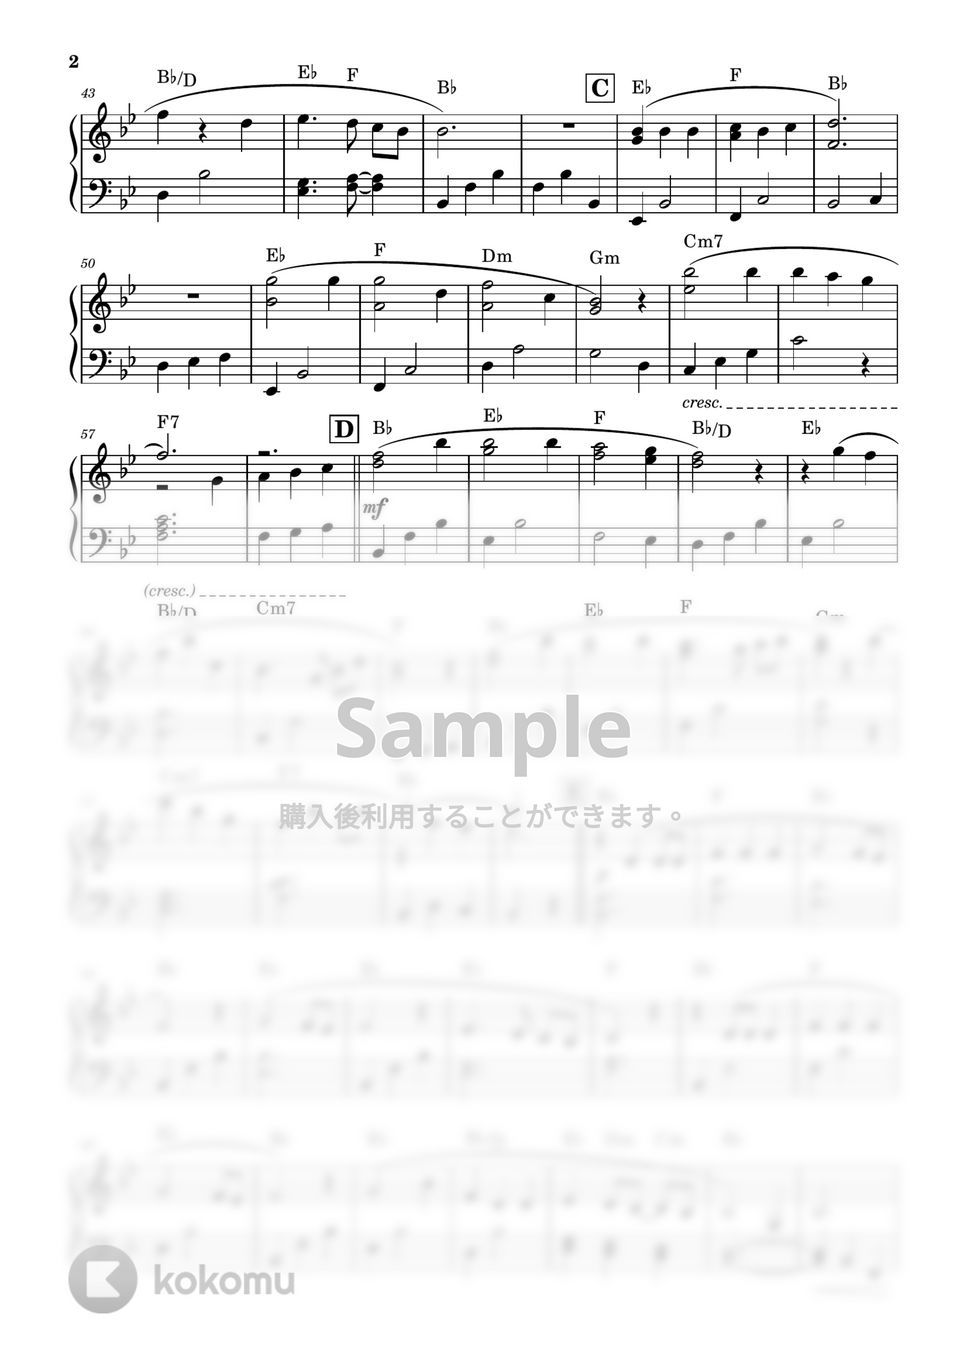 あいみょん - 愛の花【初級で弾ける簡単楽譜】 by KEIKO EBI